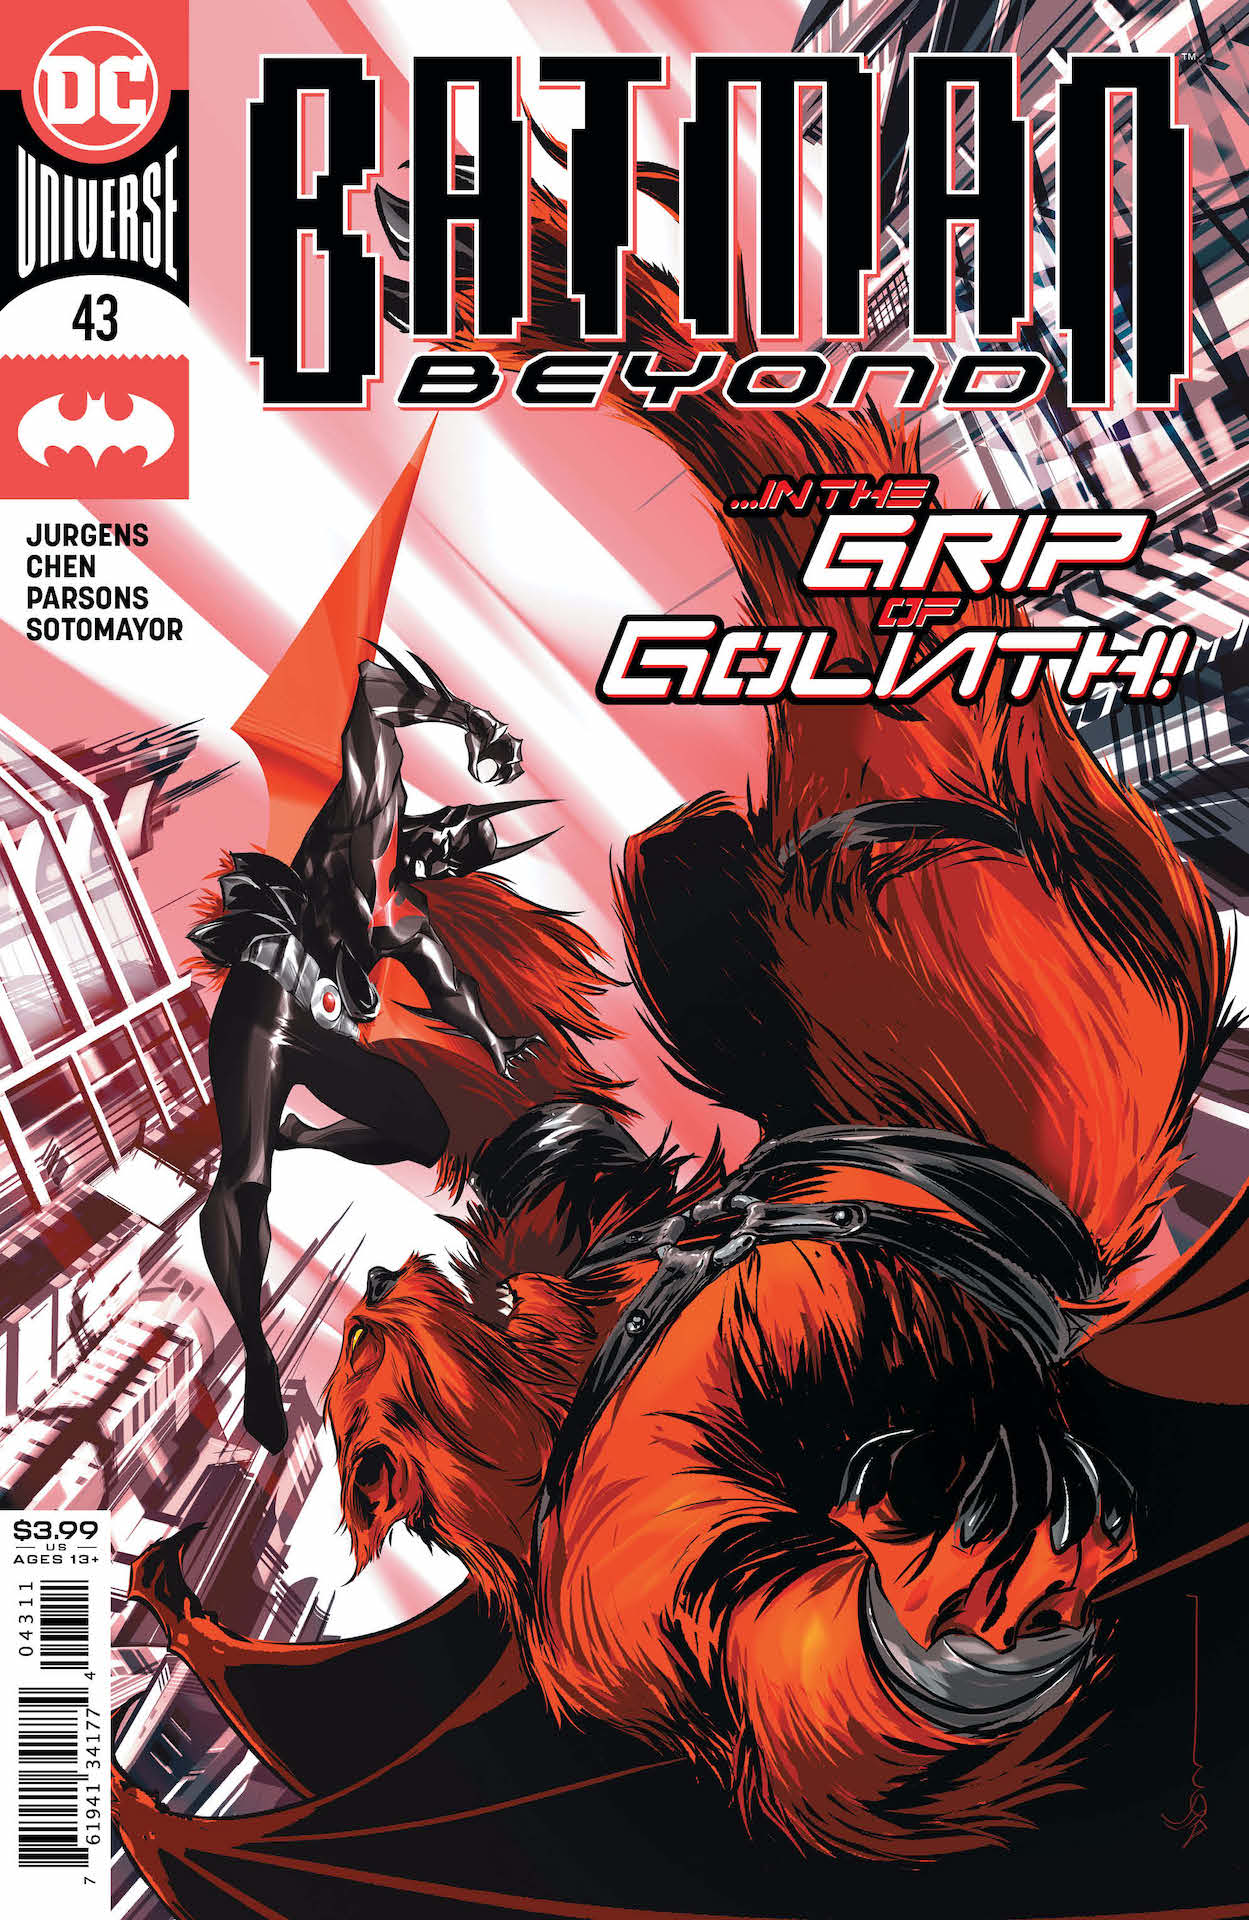 DC Preview: Batman Beyond #43